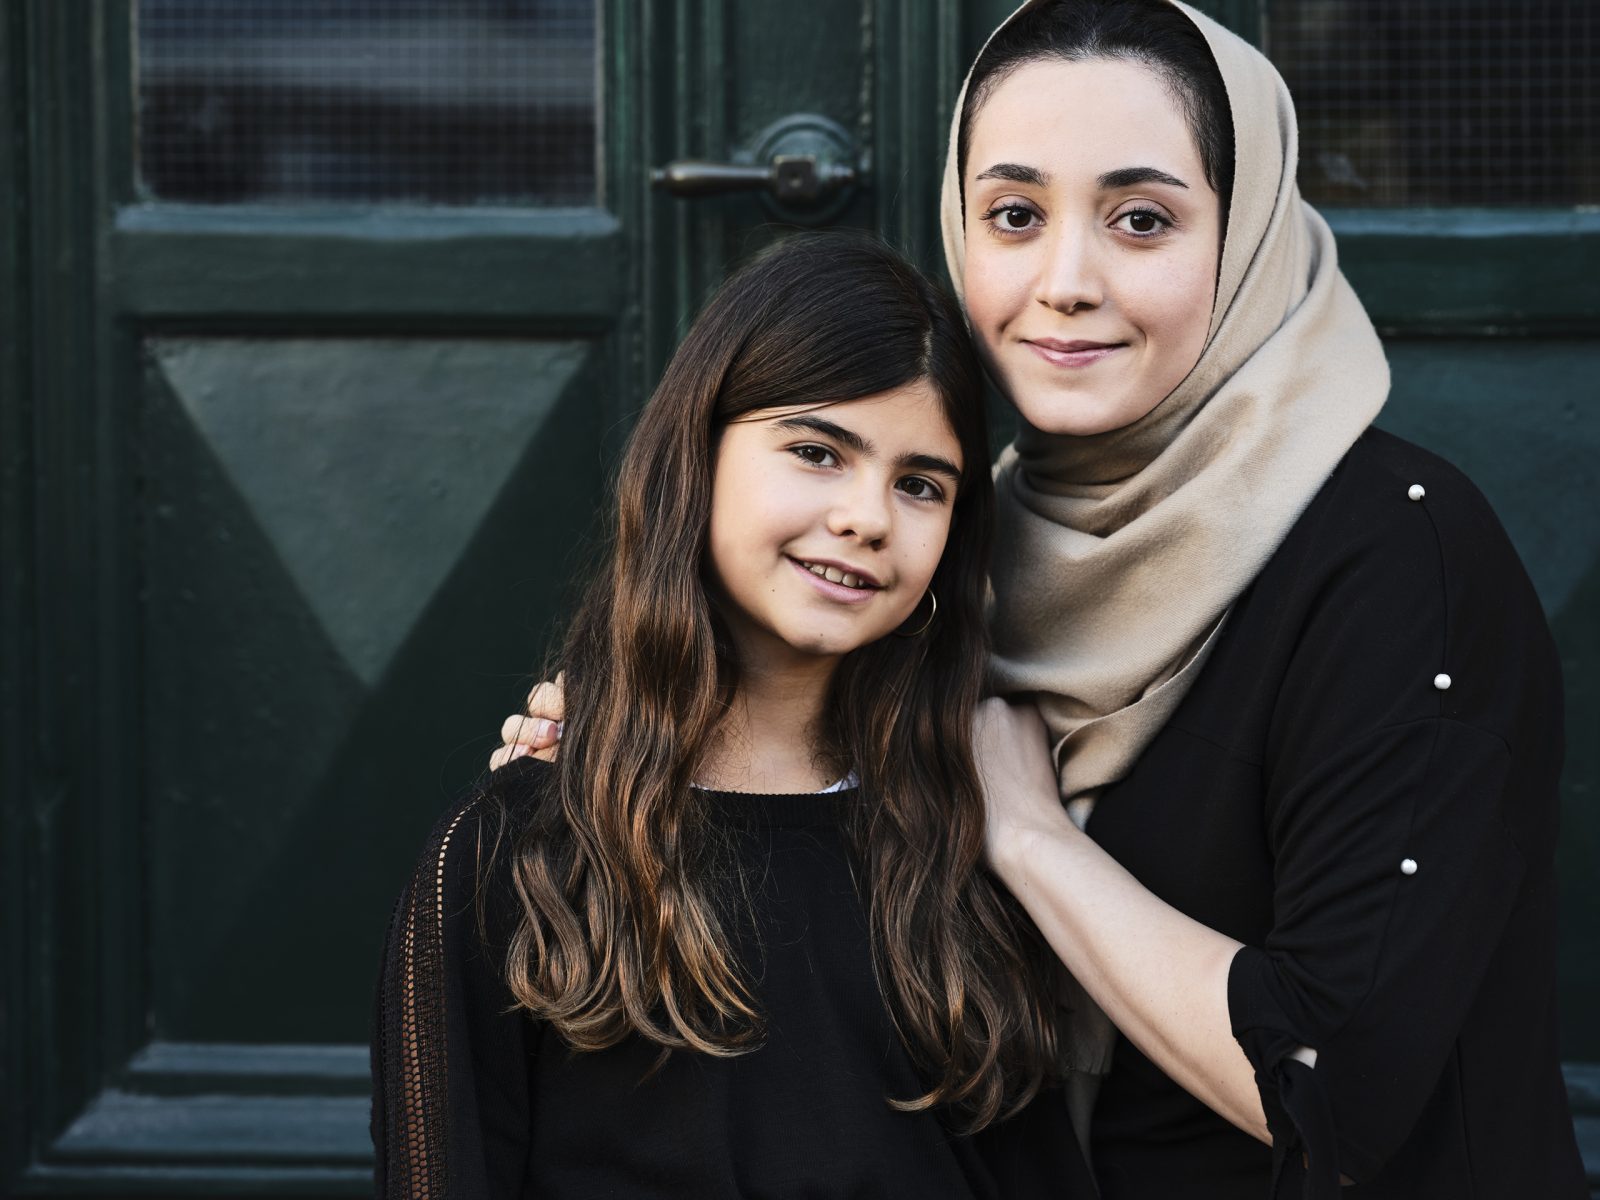 Frau mit Hijab, Mädchen, arabischer Herkunft